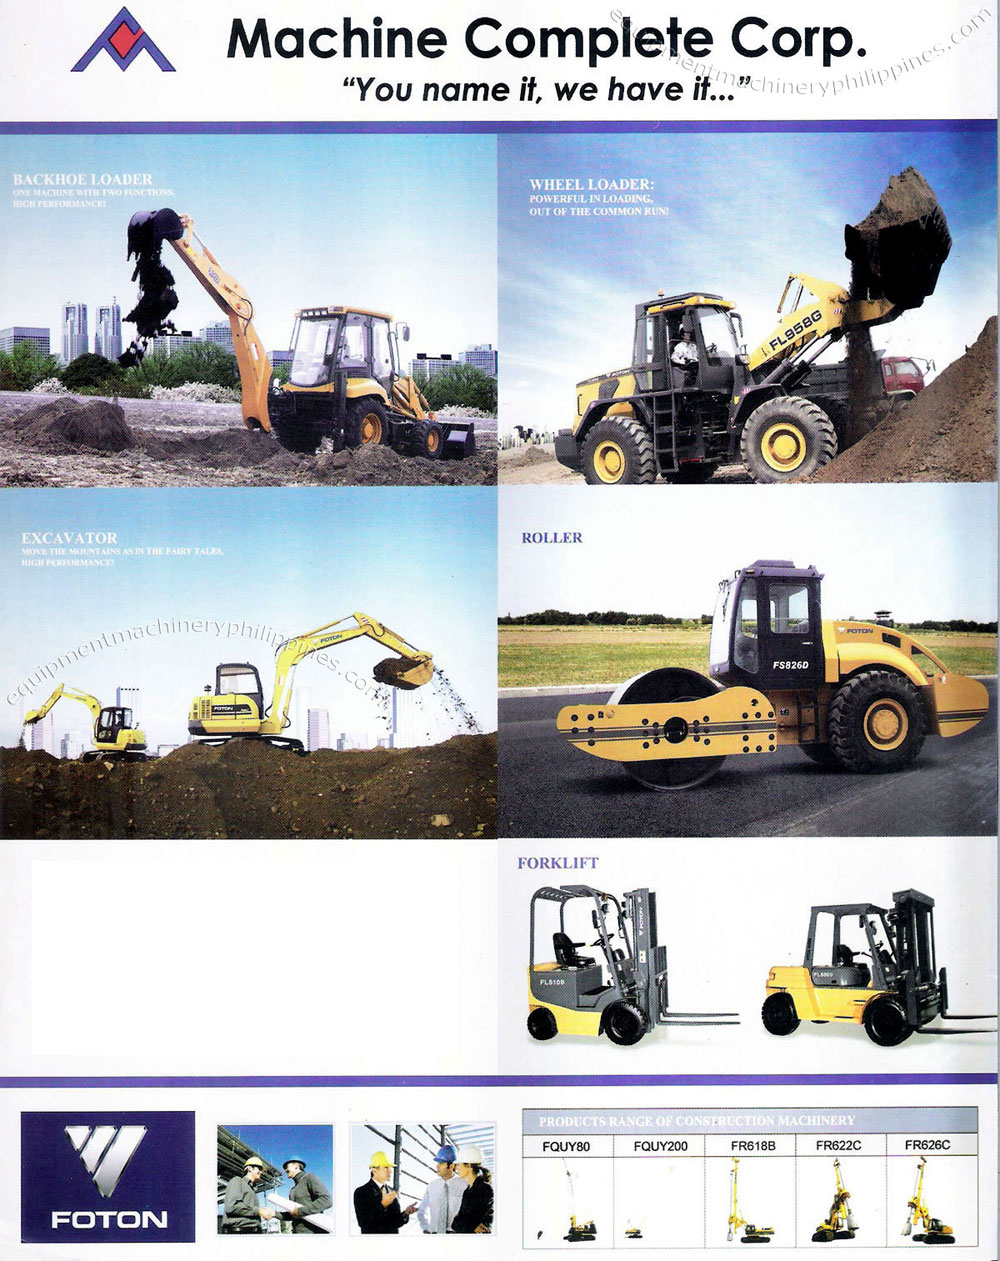 Heavy Equipment: Backhoe Loader, Wheel Loader, Excavator, Roller, Forklift, Construction Machinery